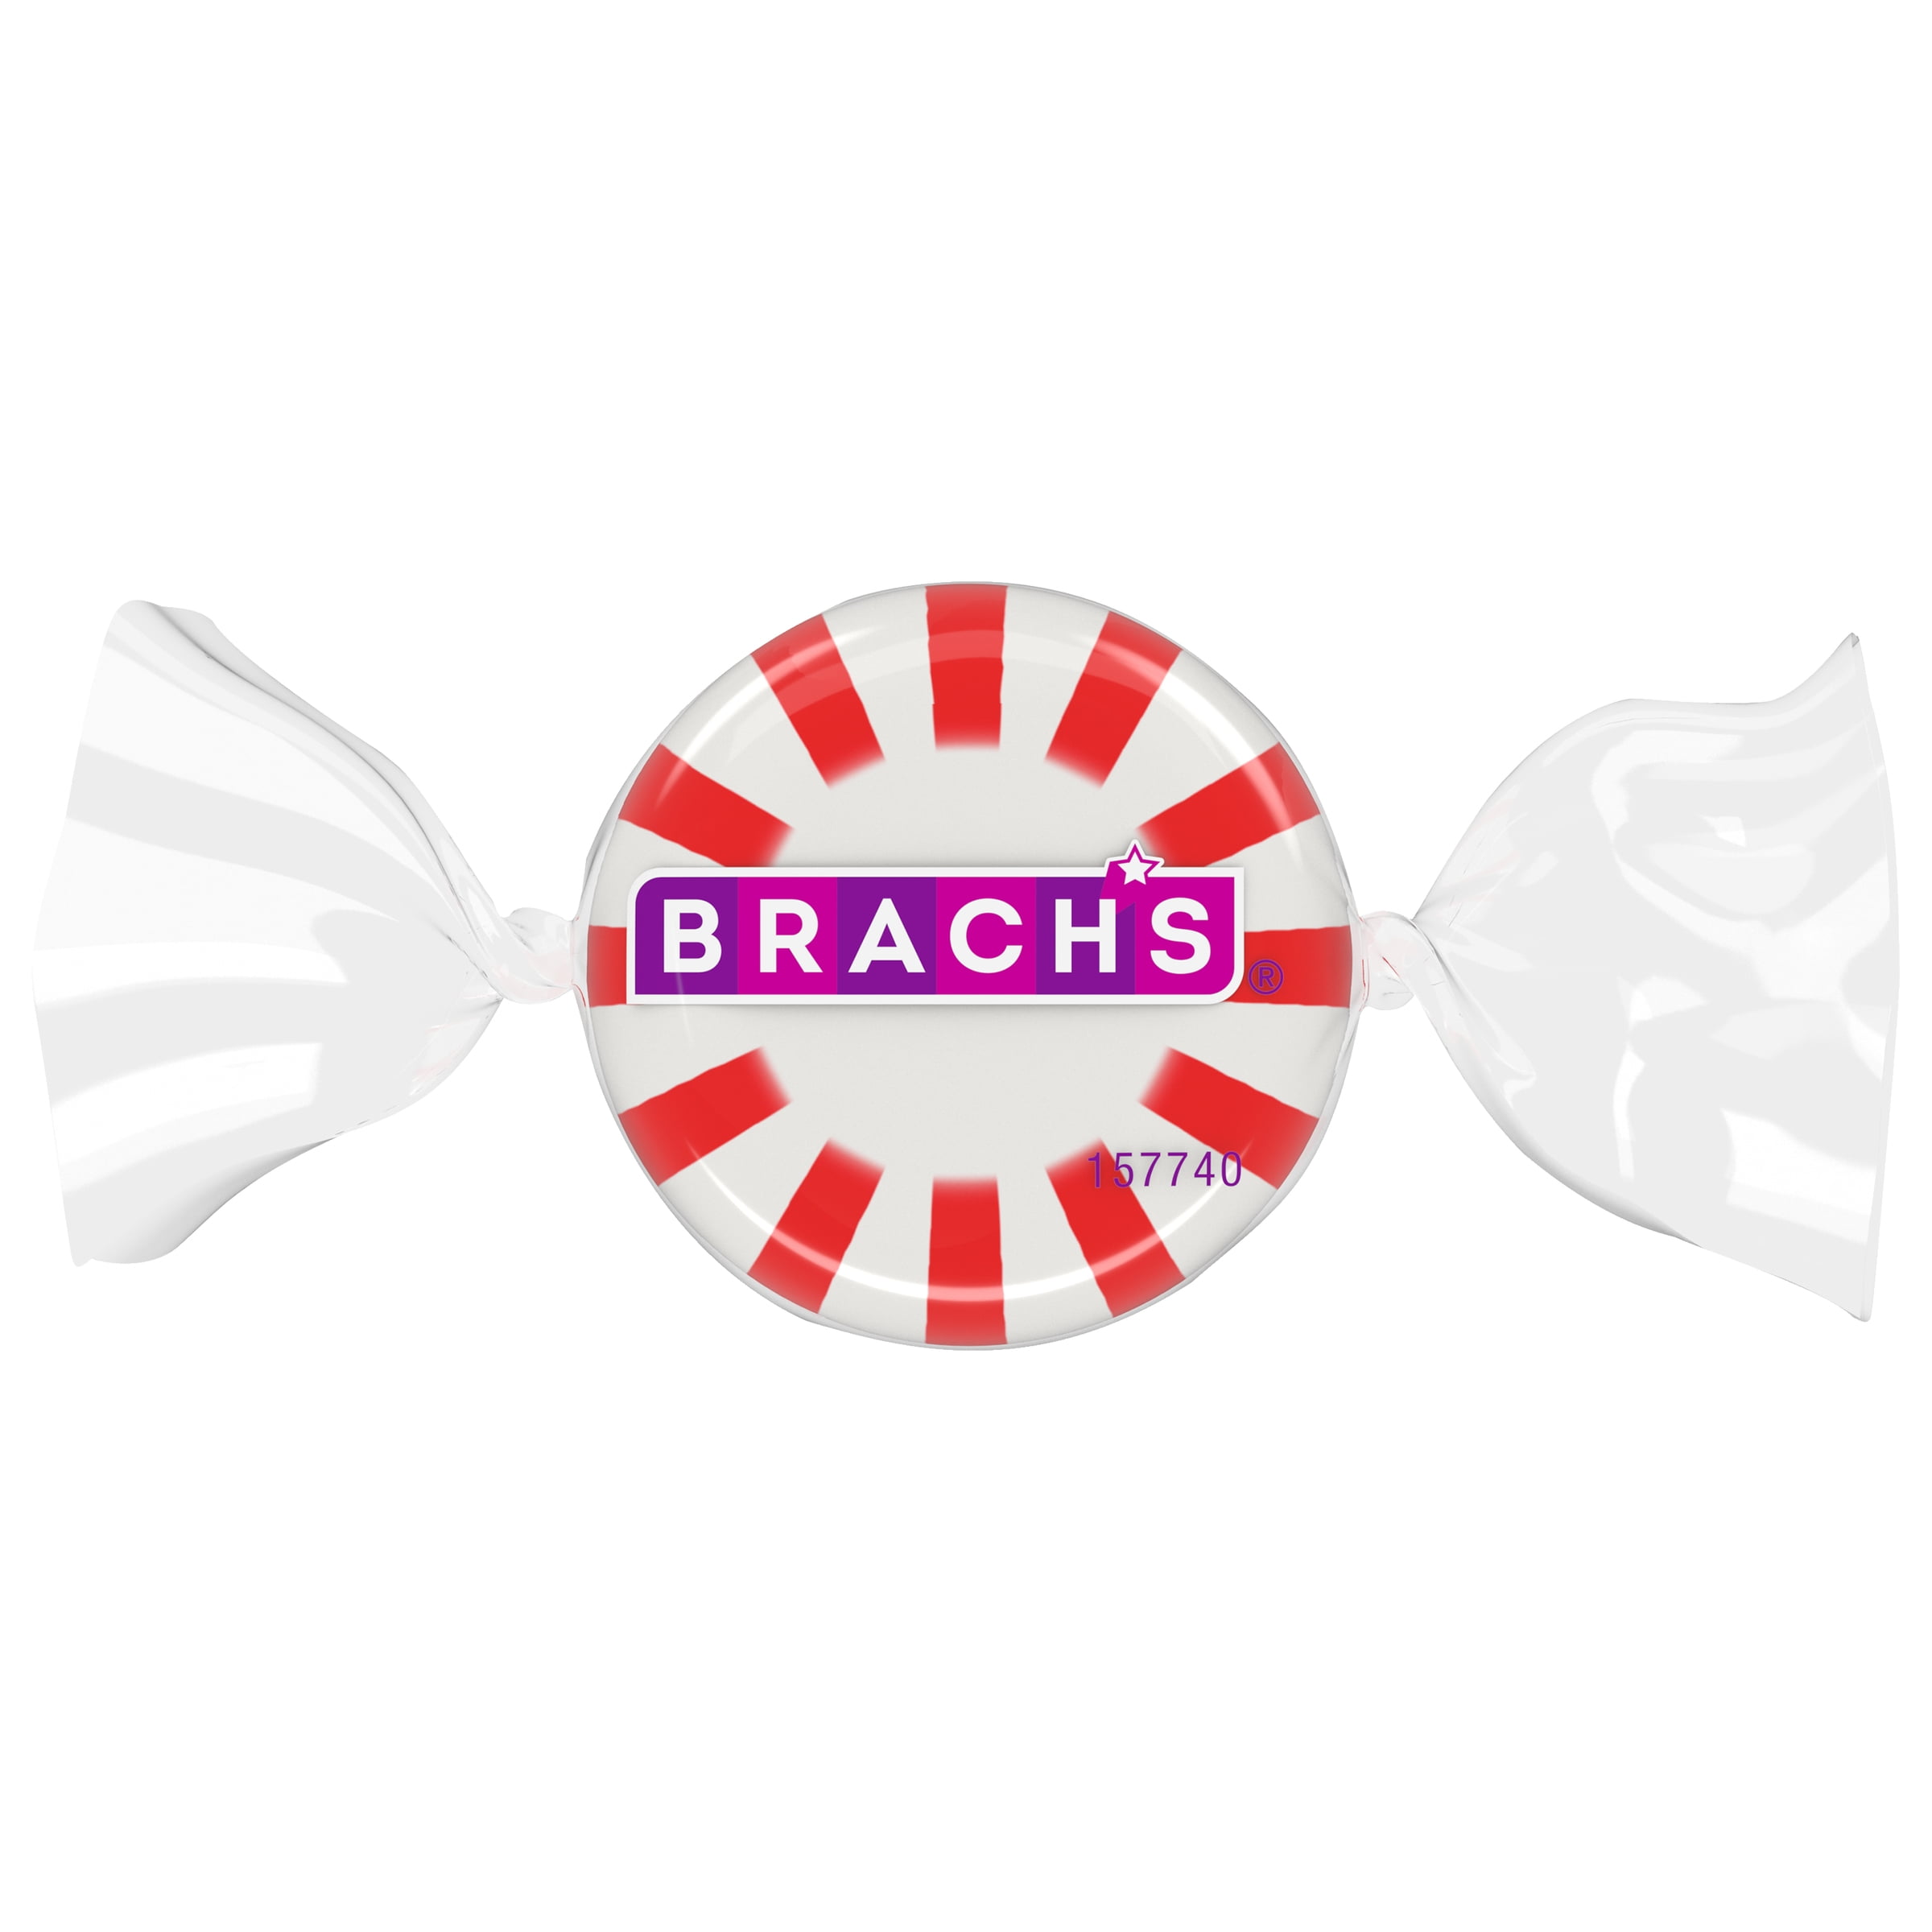 Brach's Starbrites Spearmint, 6.3-Pound : : Grocery